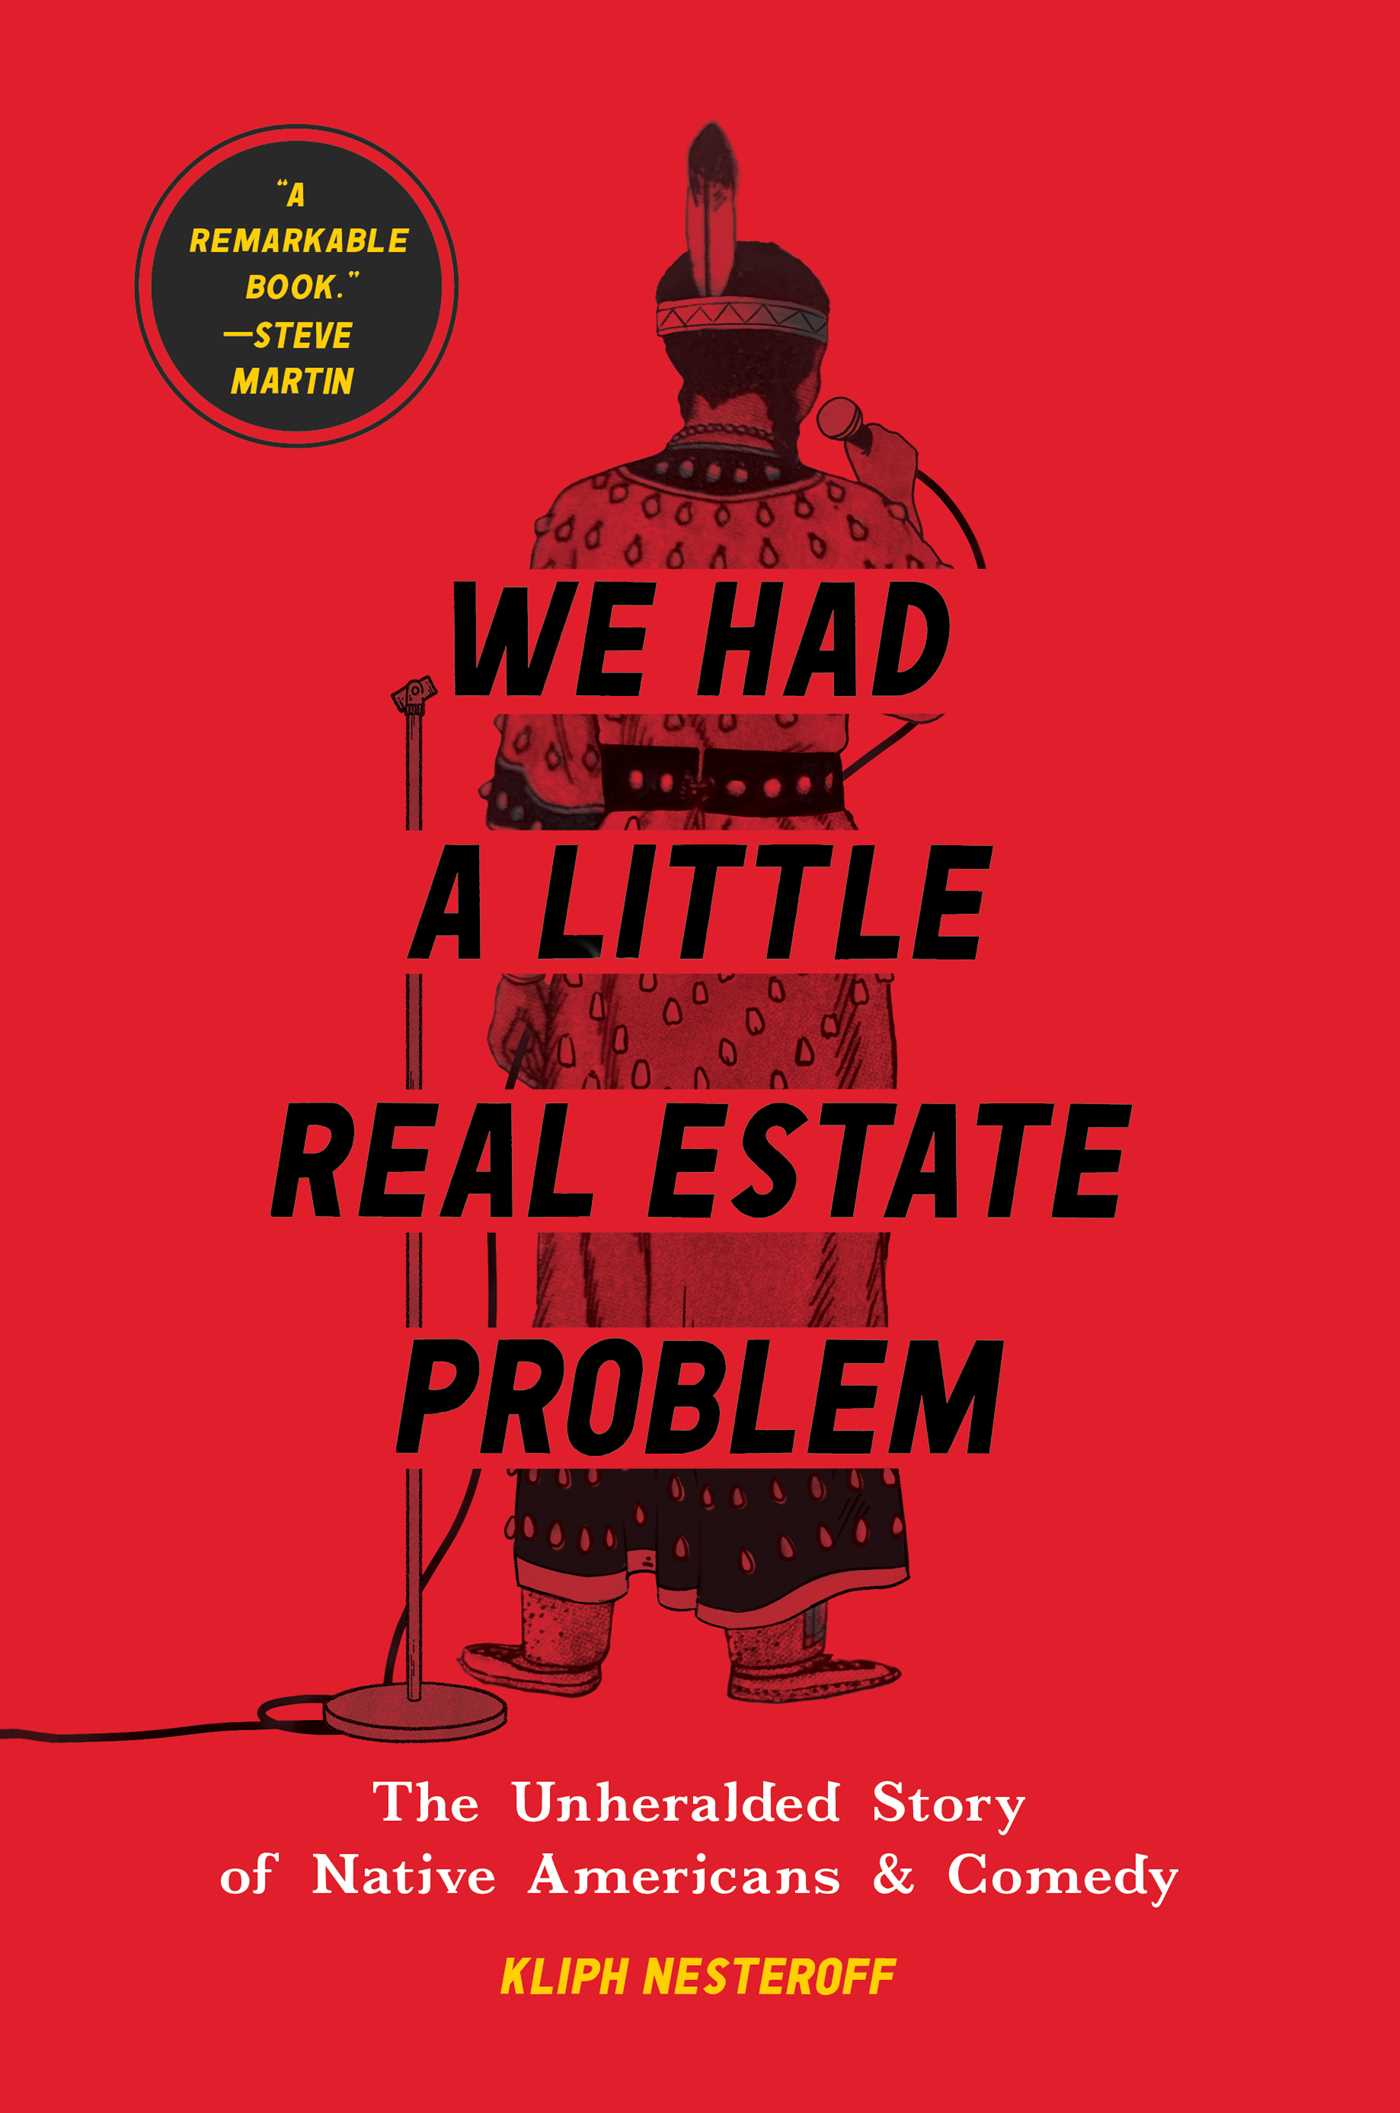 real estate problem